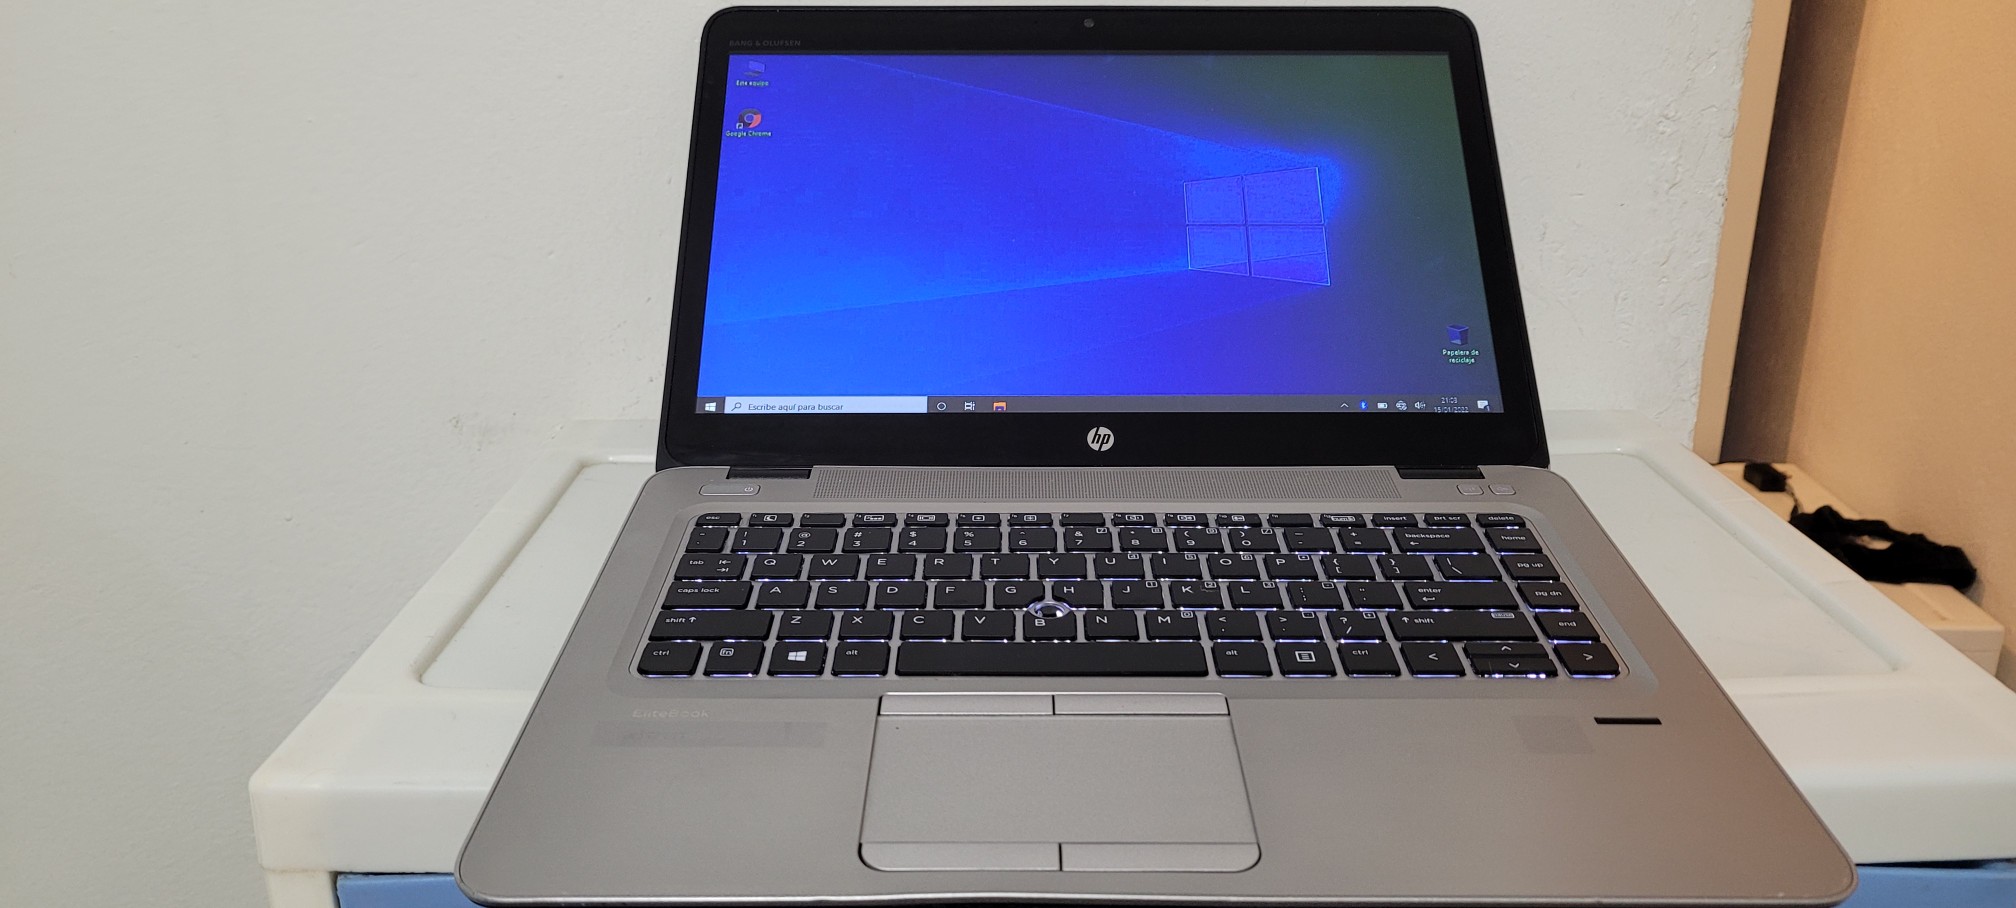 computadoras y laptops - Laptop hp Pantalla Touch Core i5 7ma Gen Ram 8gb ddr4 Disco 128gb SSD Y 320GB 0